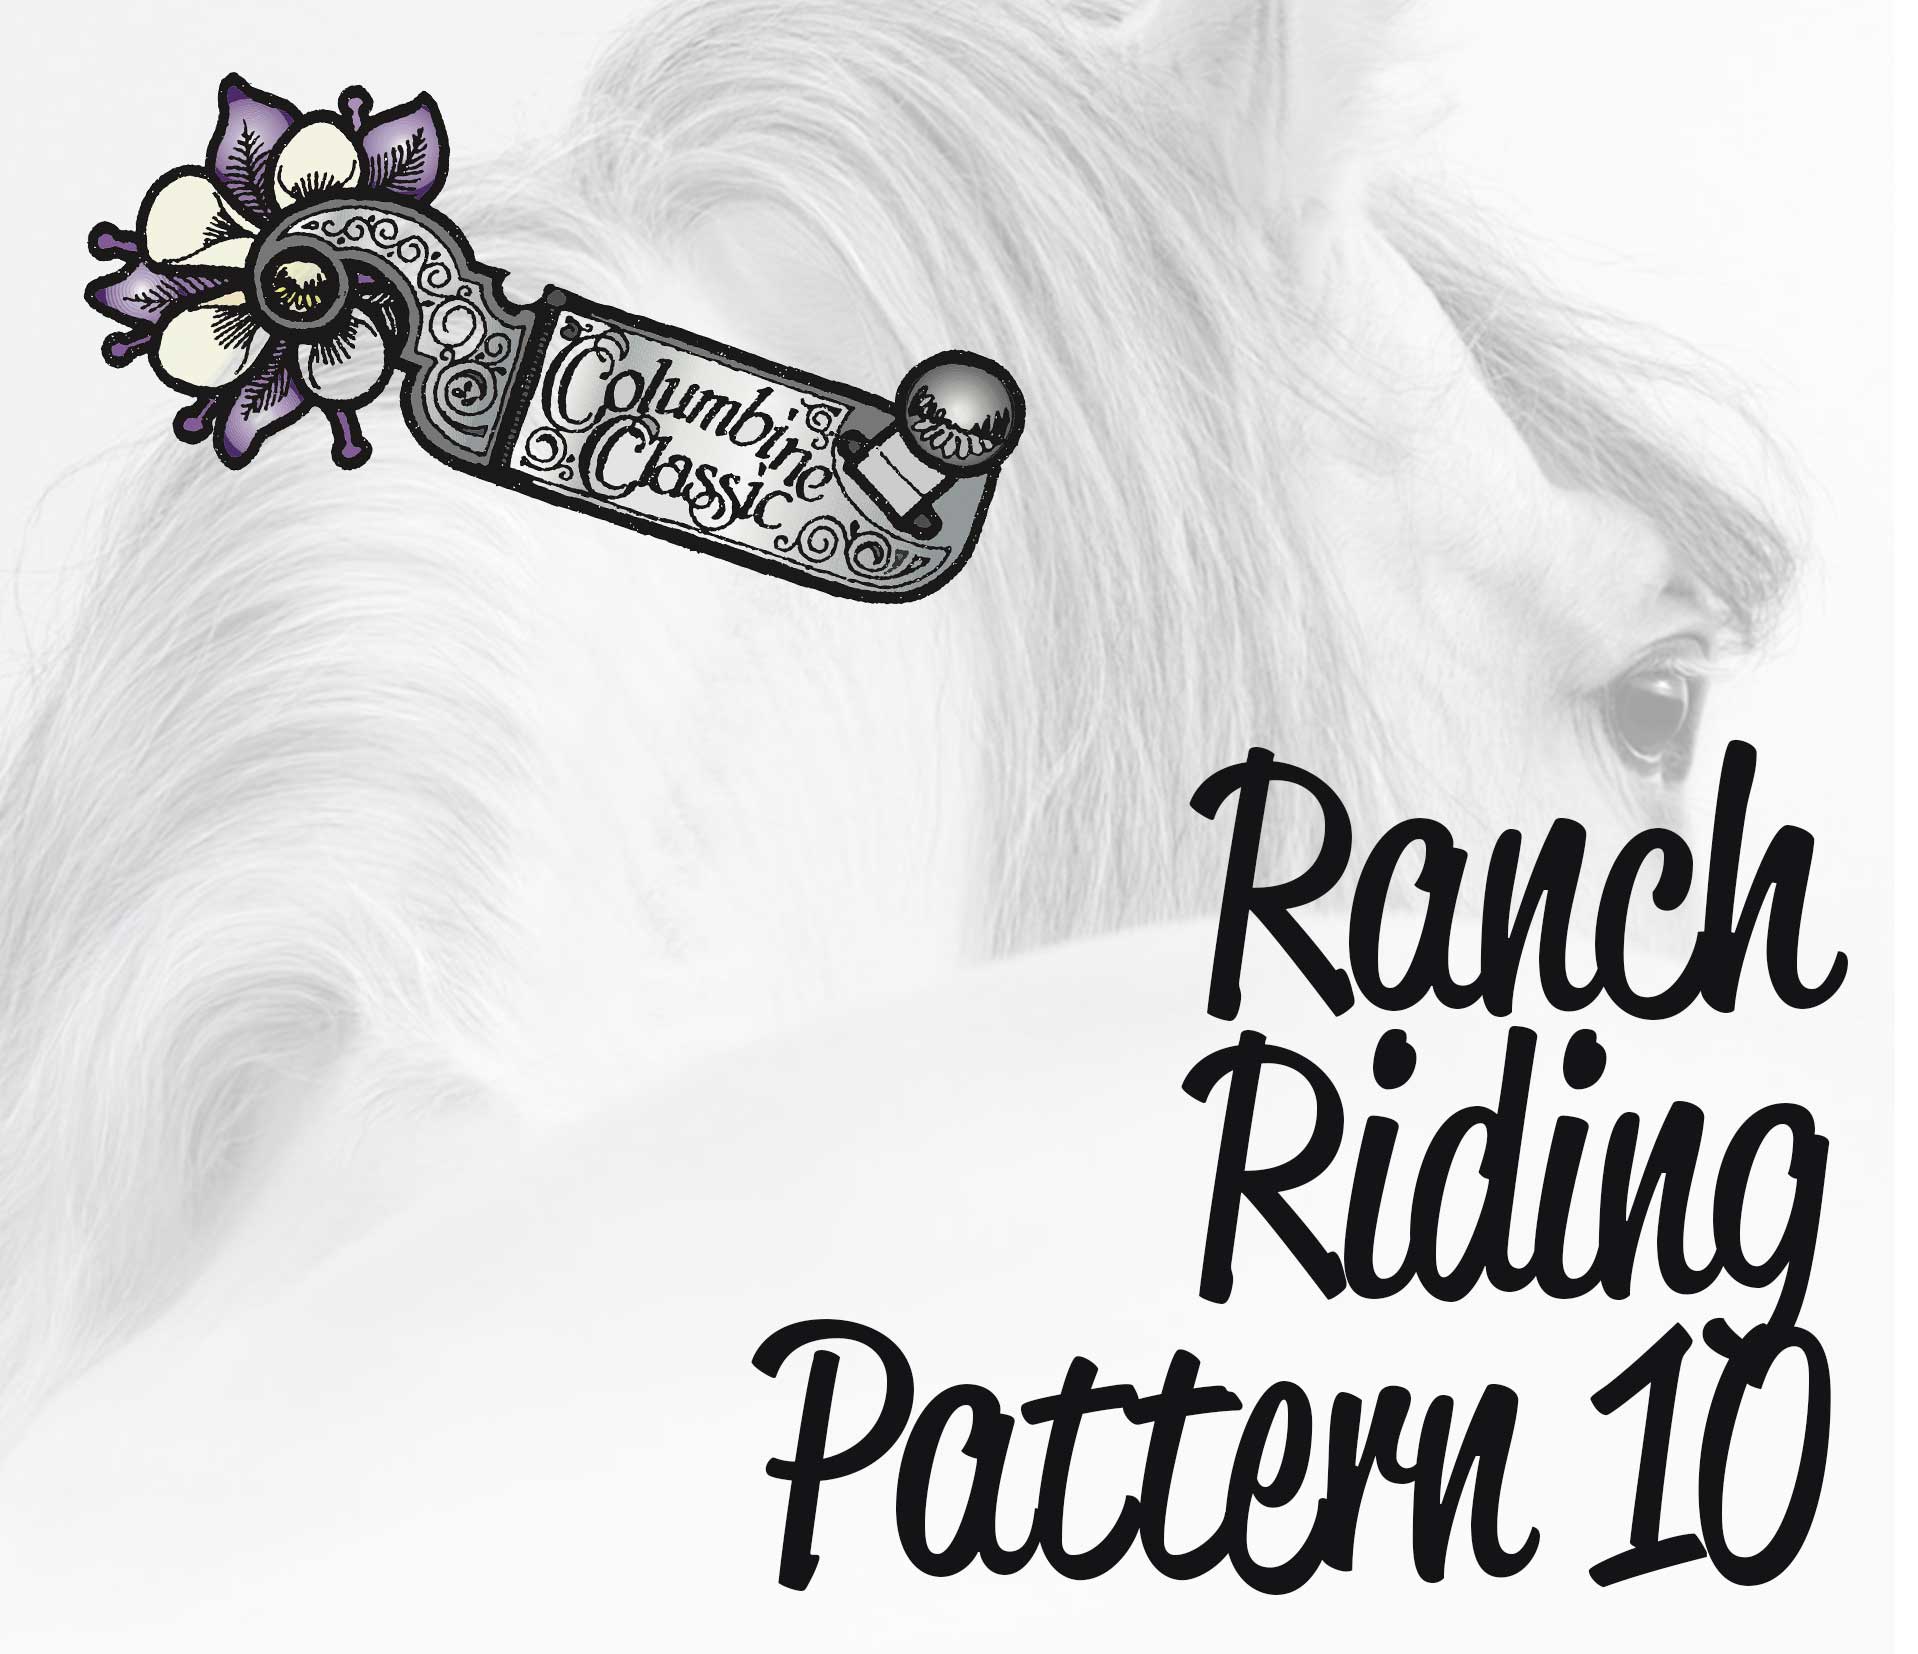 tcc-ranch-riding-pattern